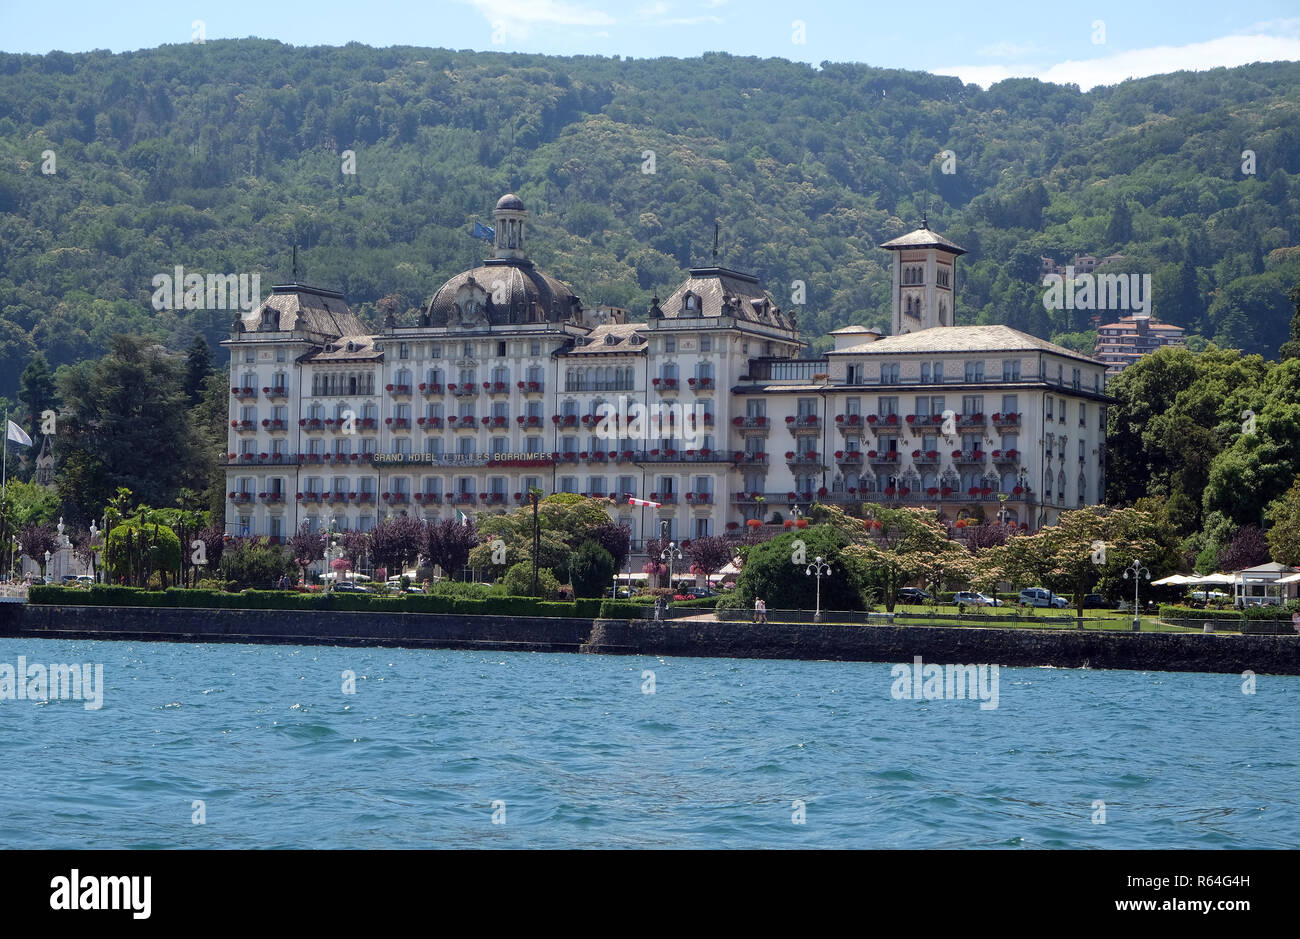 Grand Hotel des Iles Borromees, Stresa, Lago Maggiore, Piedmont, Italy Stock Photo